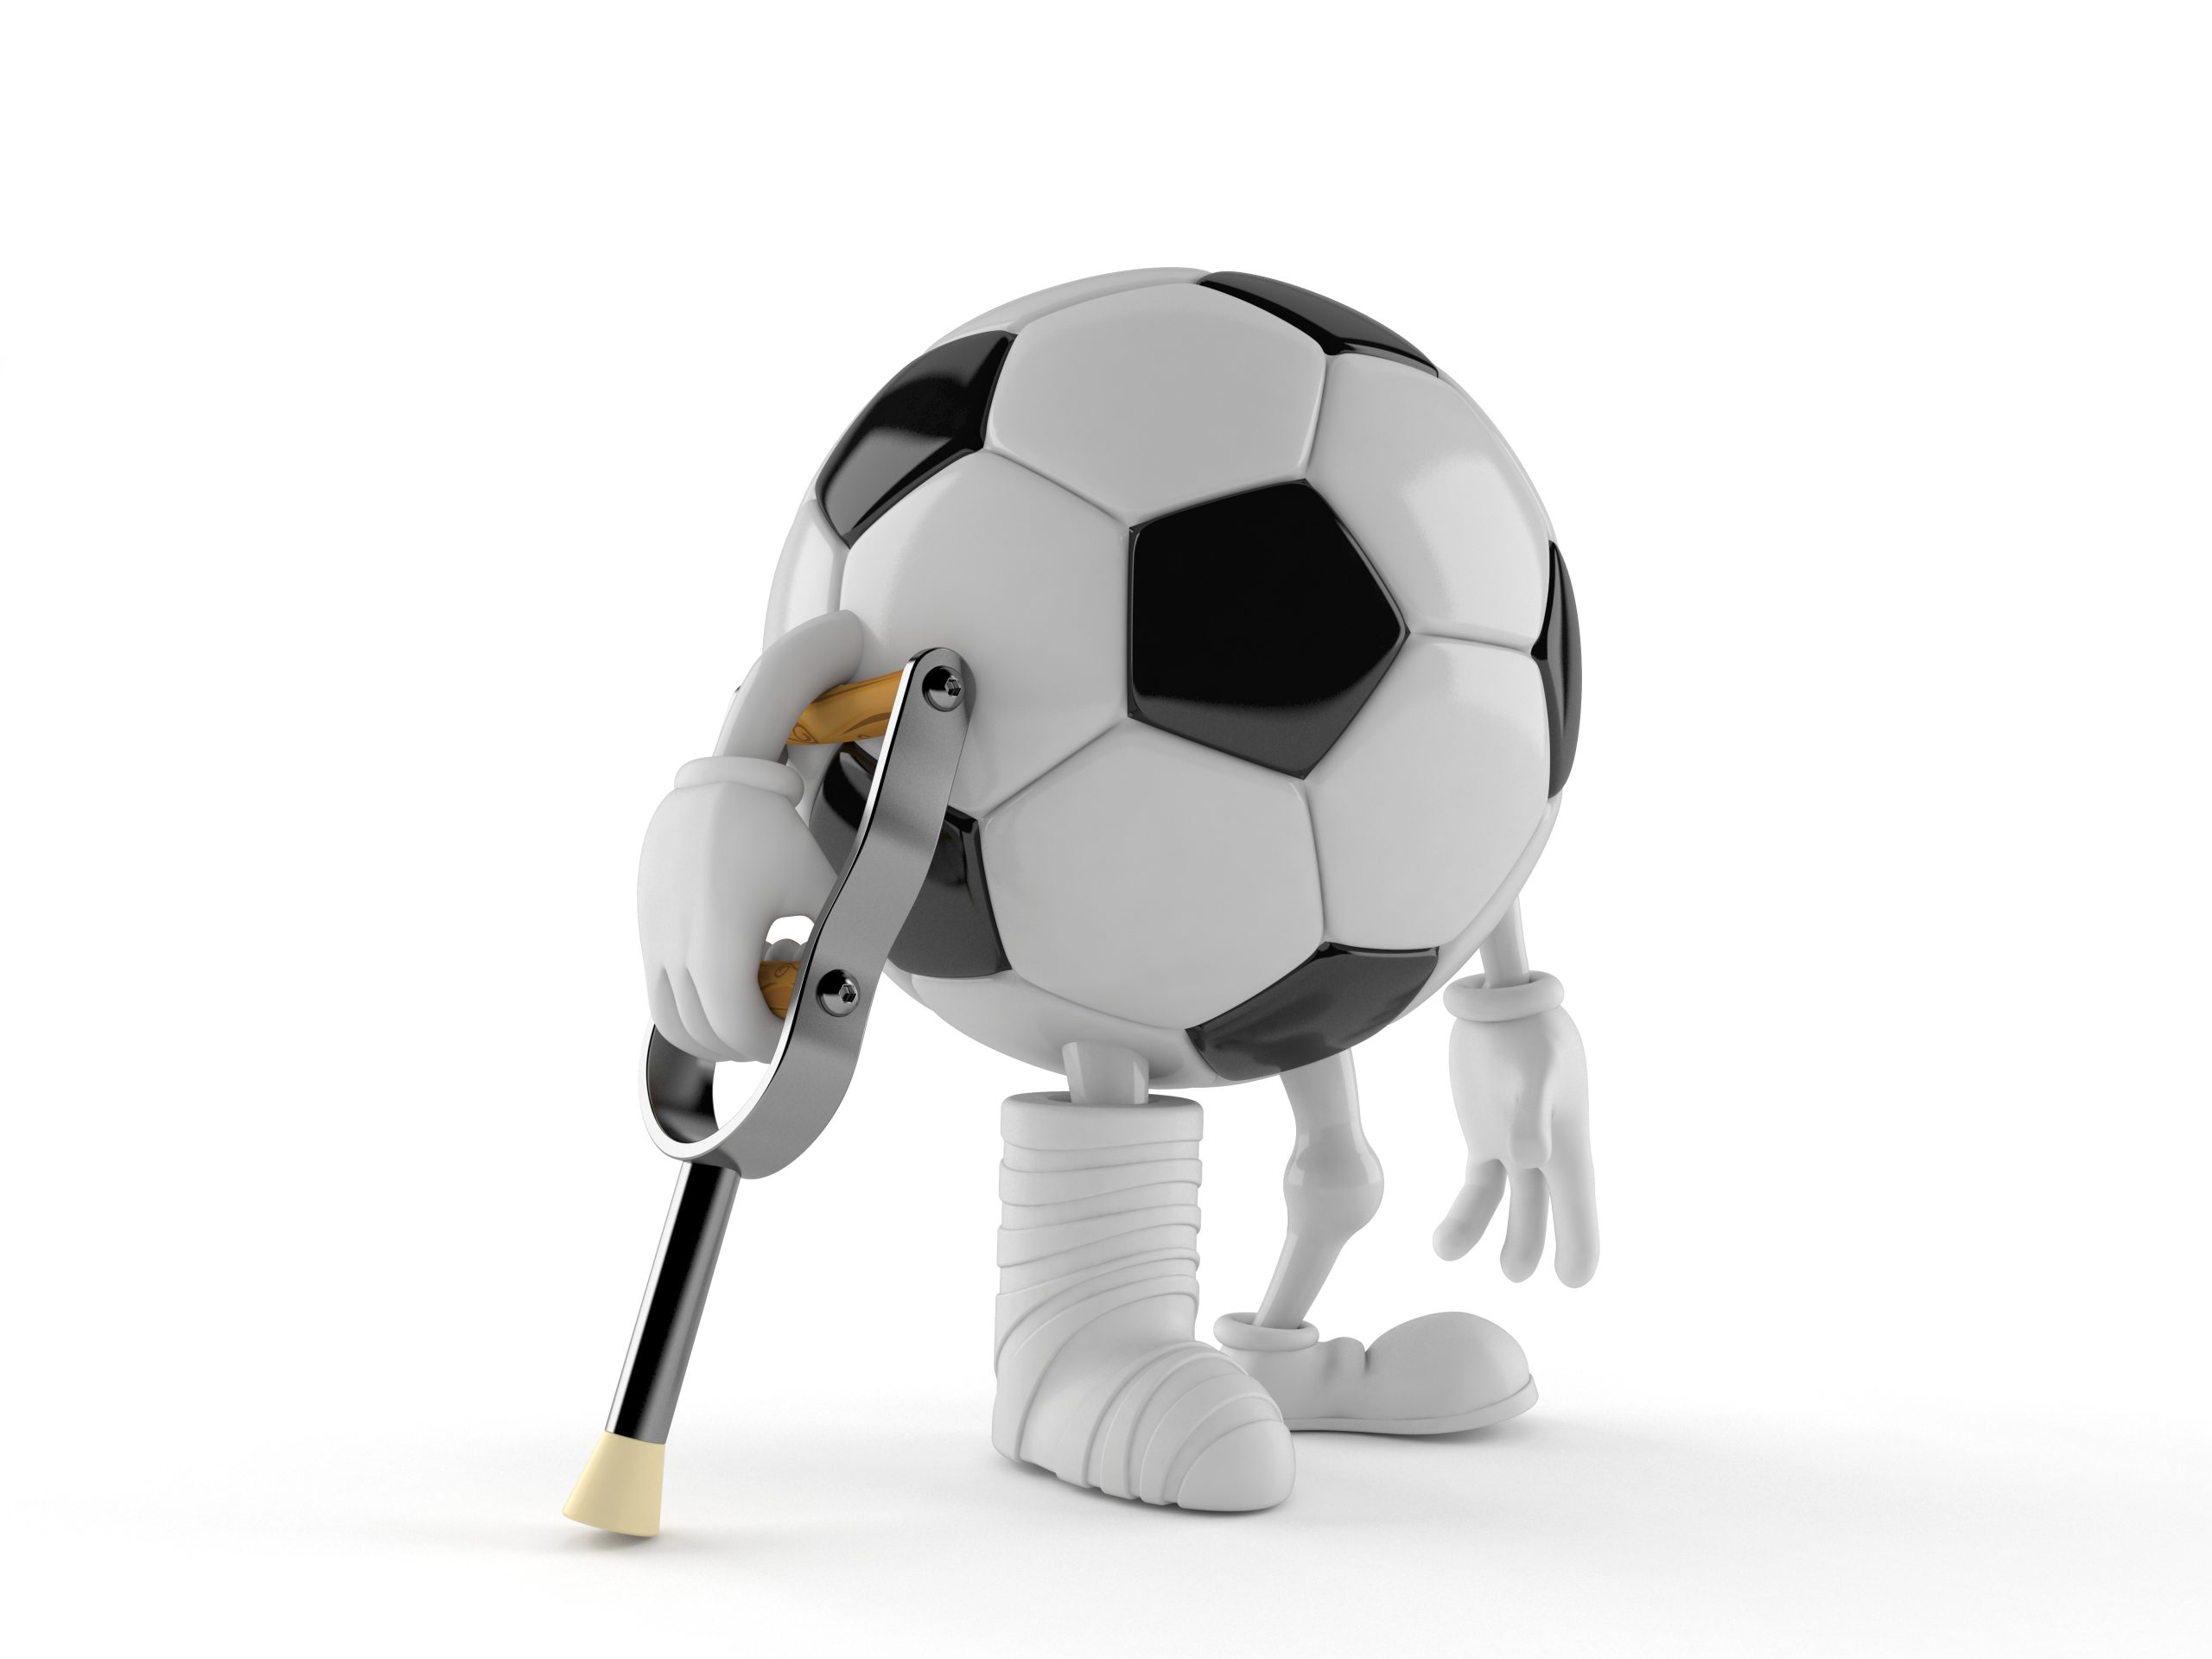 Soccer ball character with broken leg